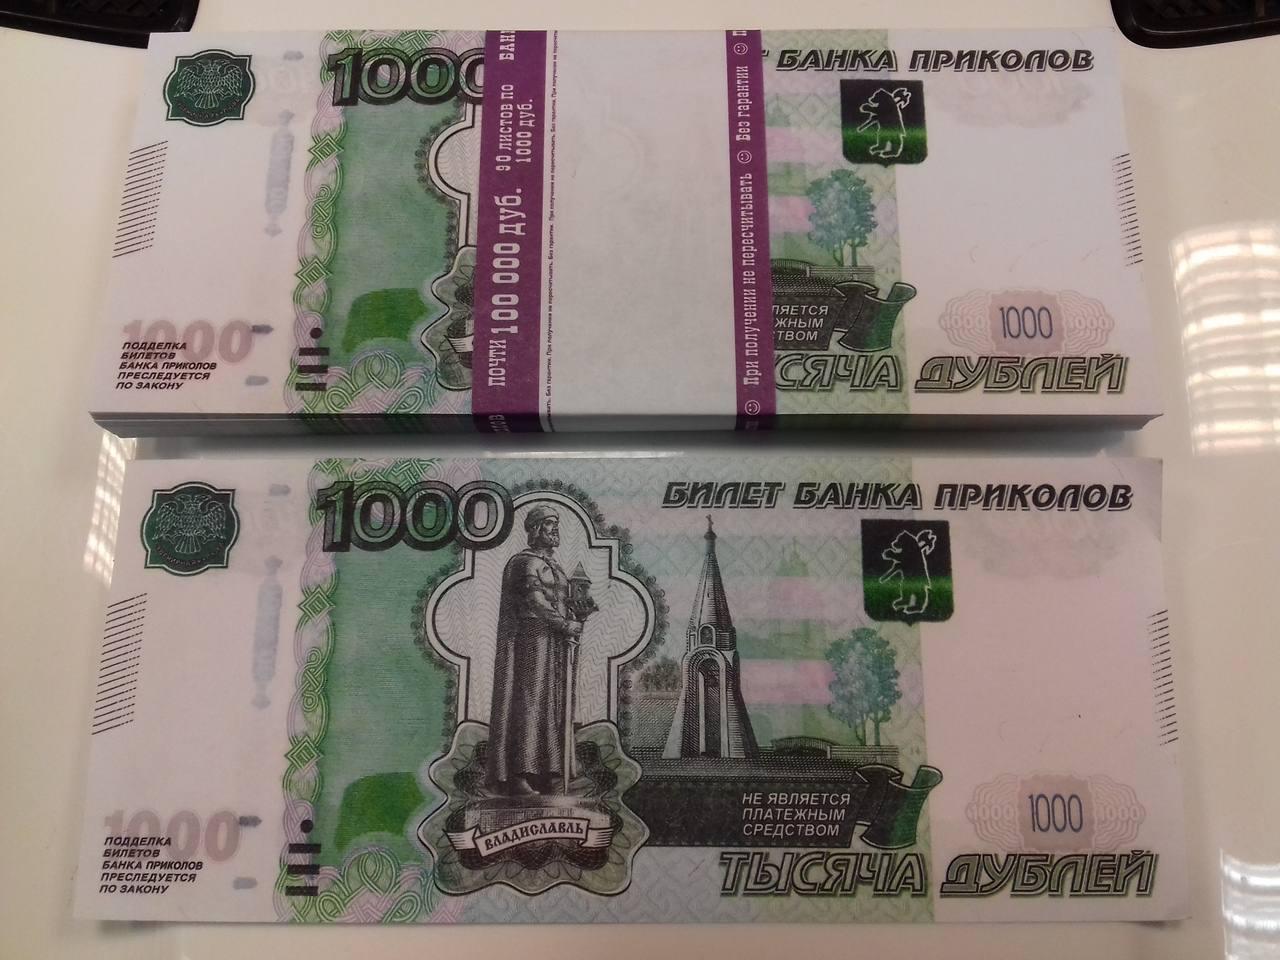 Женщина честно сдала в полицию найденные 200 тысяч рублей, а там их подменили на билеты банка приколов.